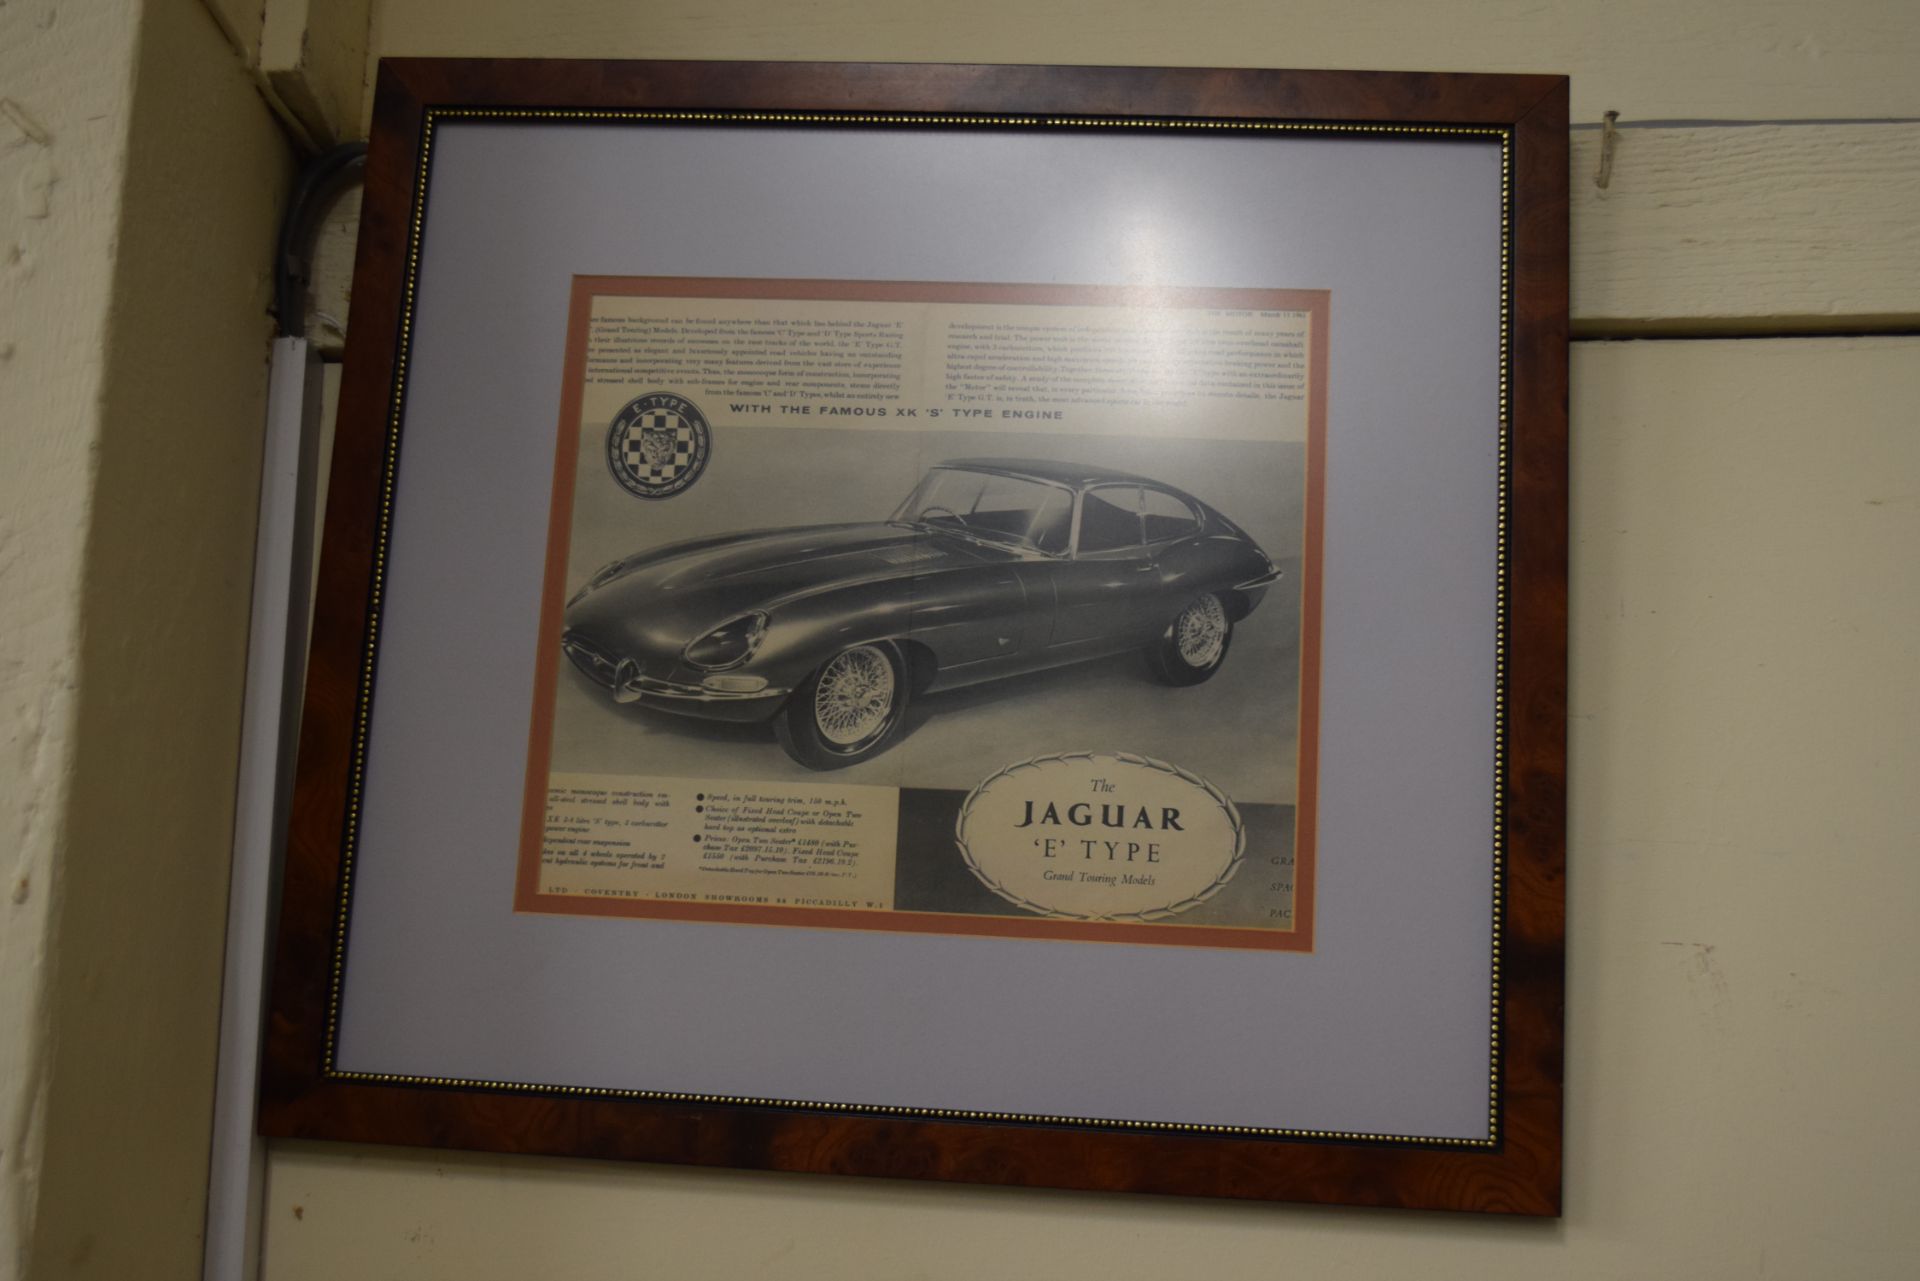 Framed advert for The Jaguar E-type GT together with framed Autocar illustration of the 1964 Formula